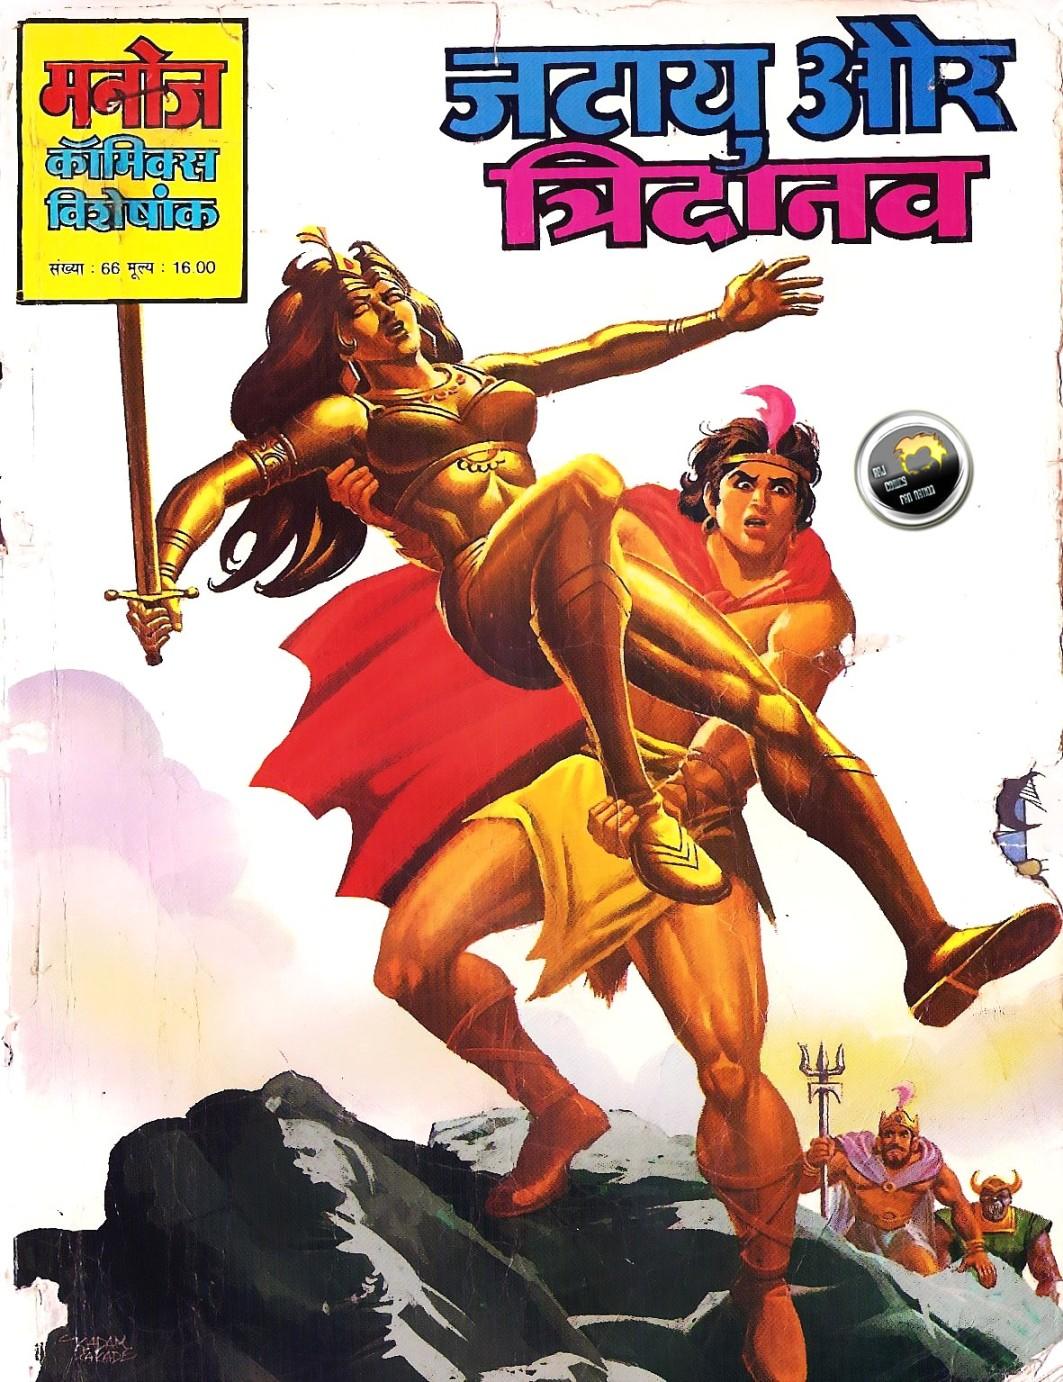 Hindi comic